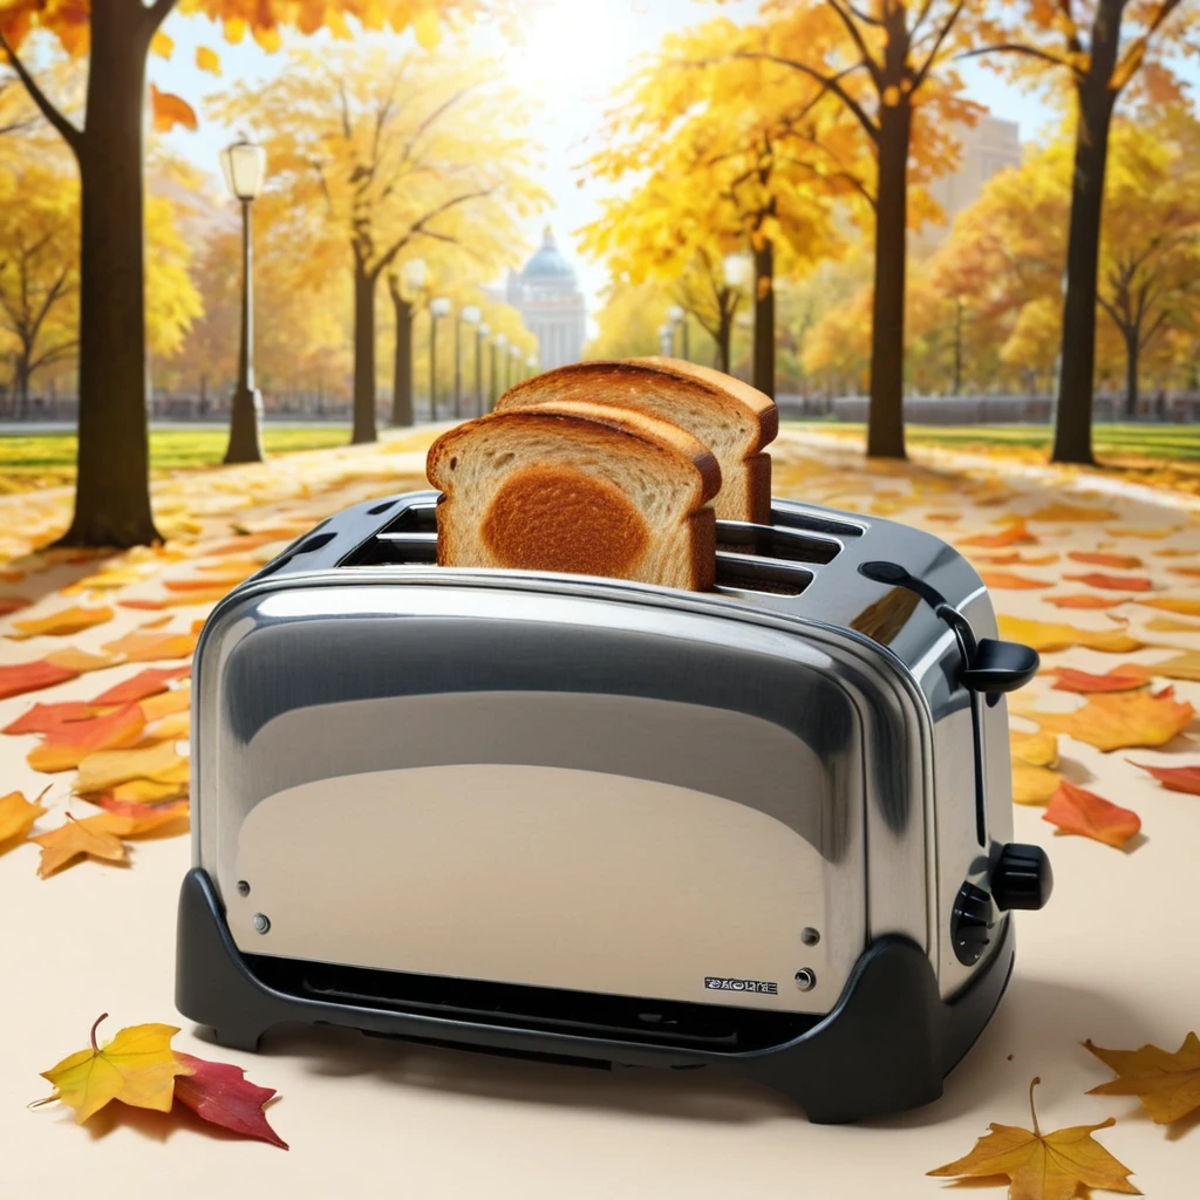 (toaster showcase) <lora:48_toaster_showcase:1.1>
Beige background,
high quality, professional, highres, amazing, dramatic...